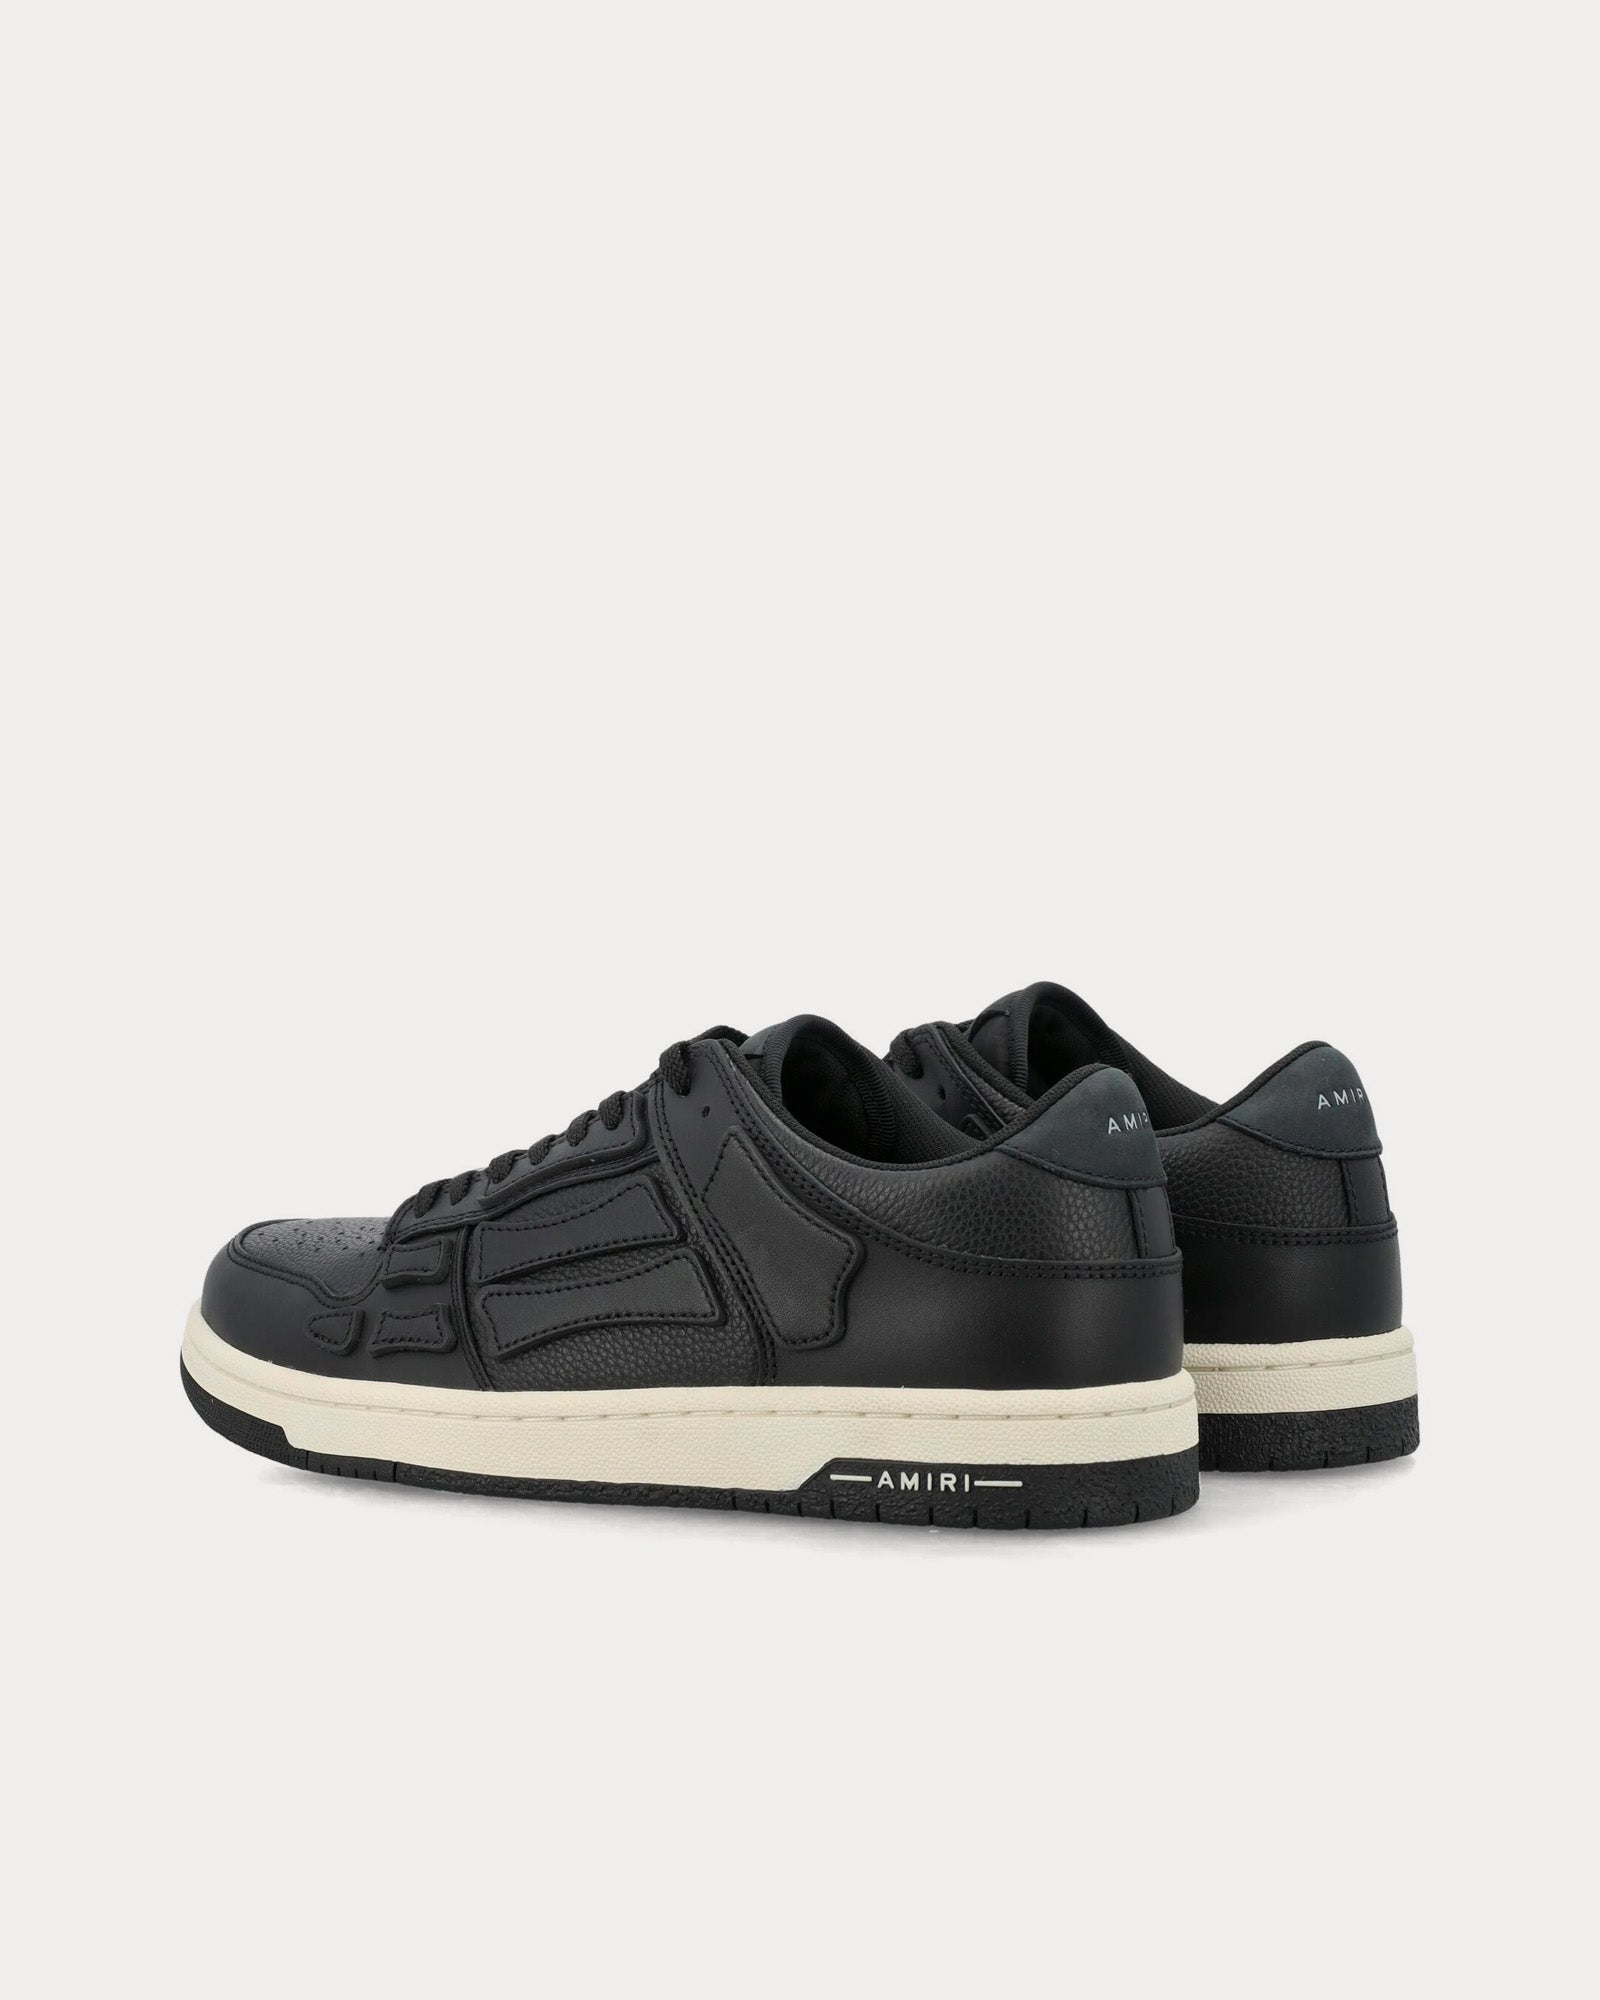 AMIRI - Skel-Top Leather Black Low Top Sneakers